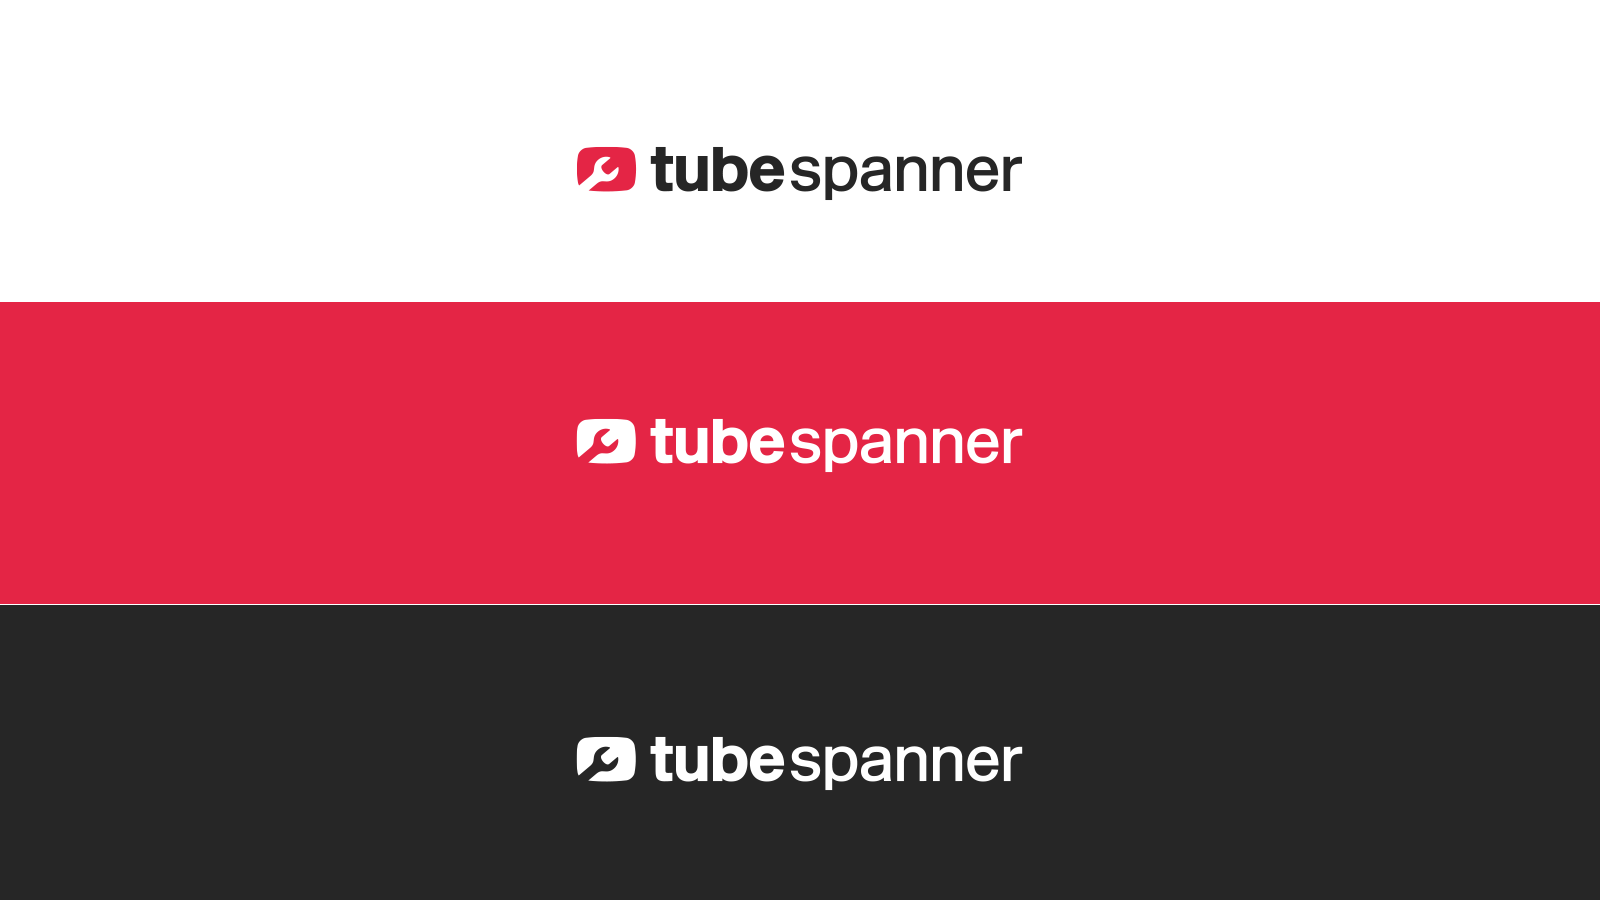 TubeSpanner Logos
